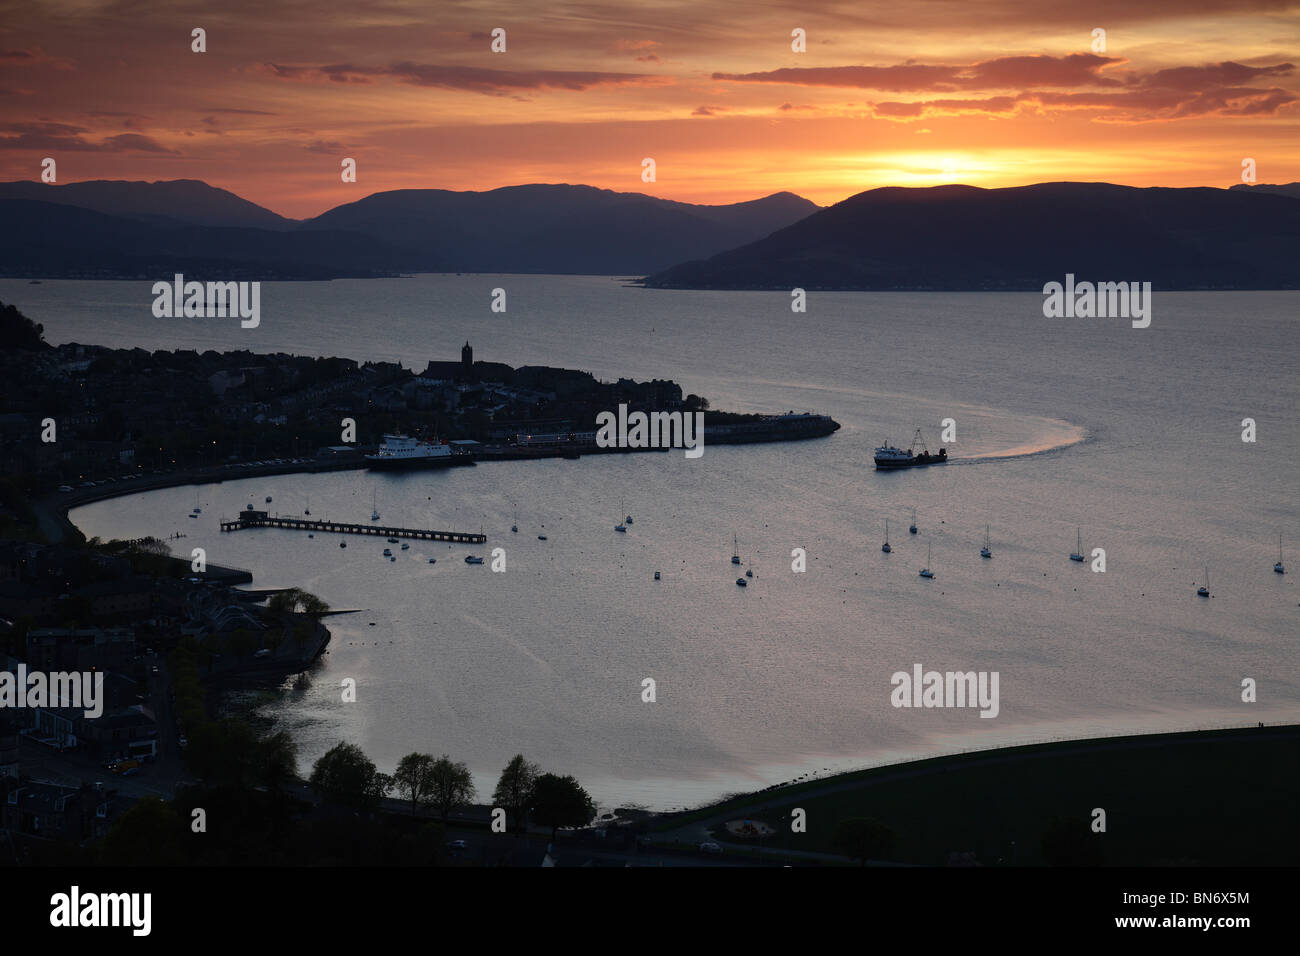 Sonnenuntergang über der Stadt Gourock und dem Firth of Clyde mit einer Calmac Fähre nähert sich, Inverclyde, Westküste von Schottland, Großbritannien Stockfoto